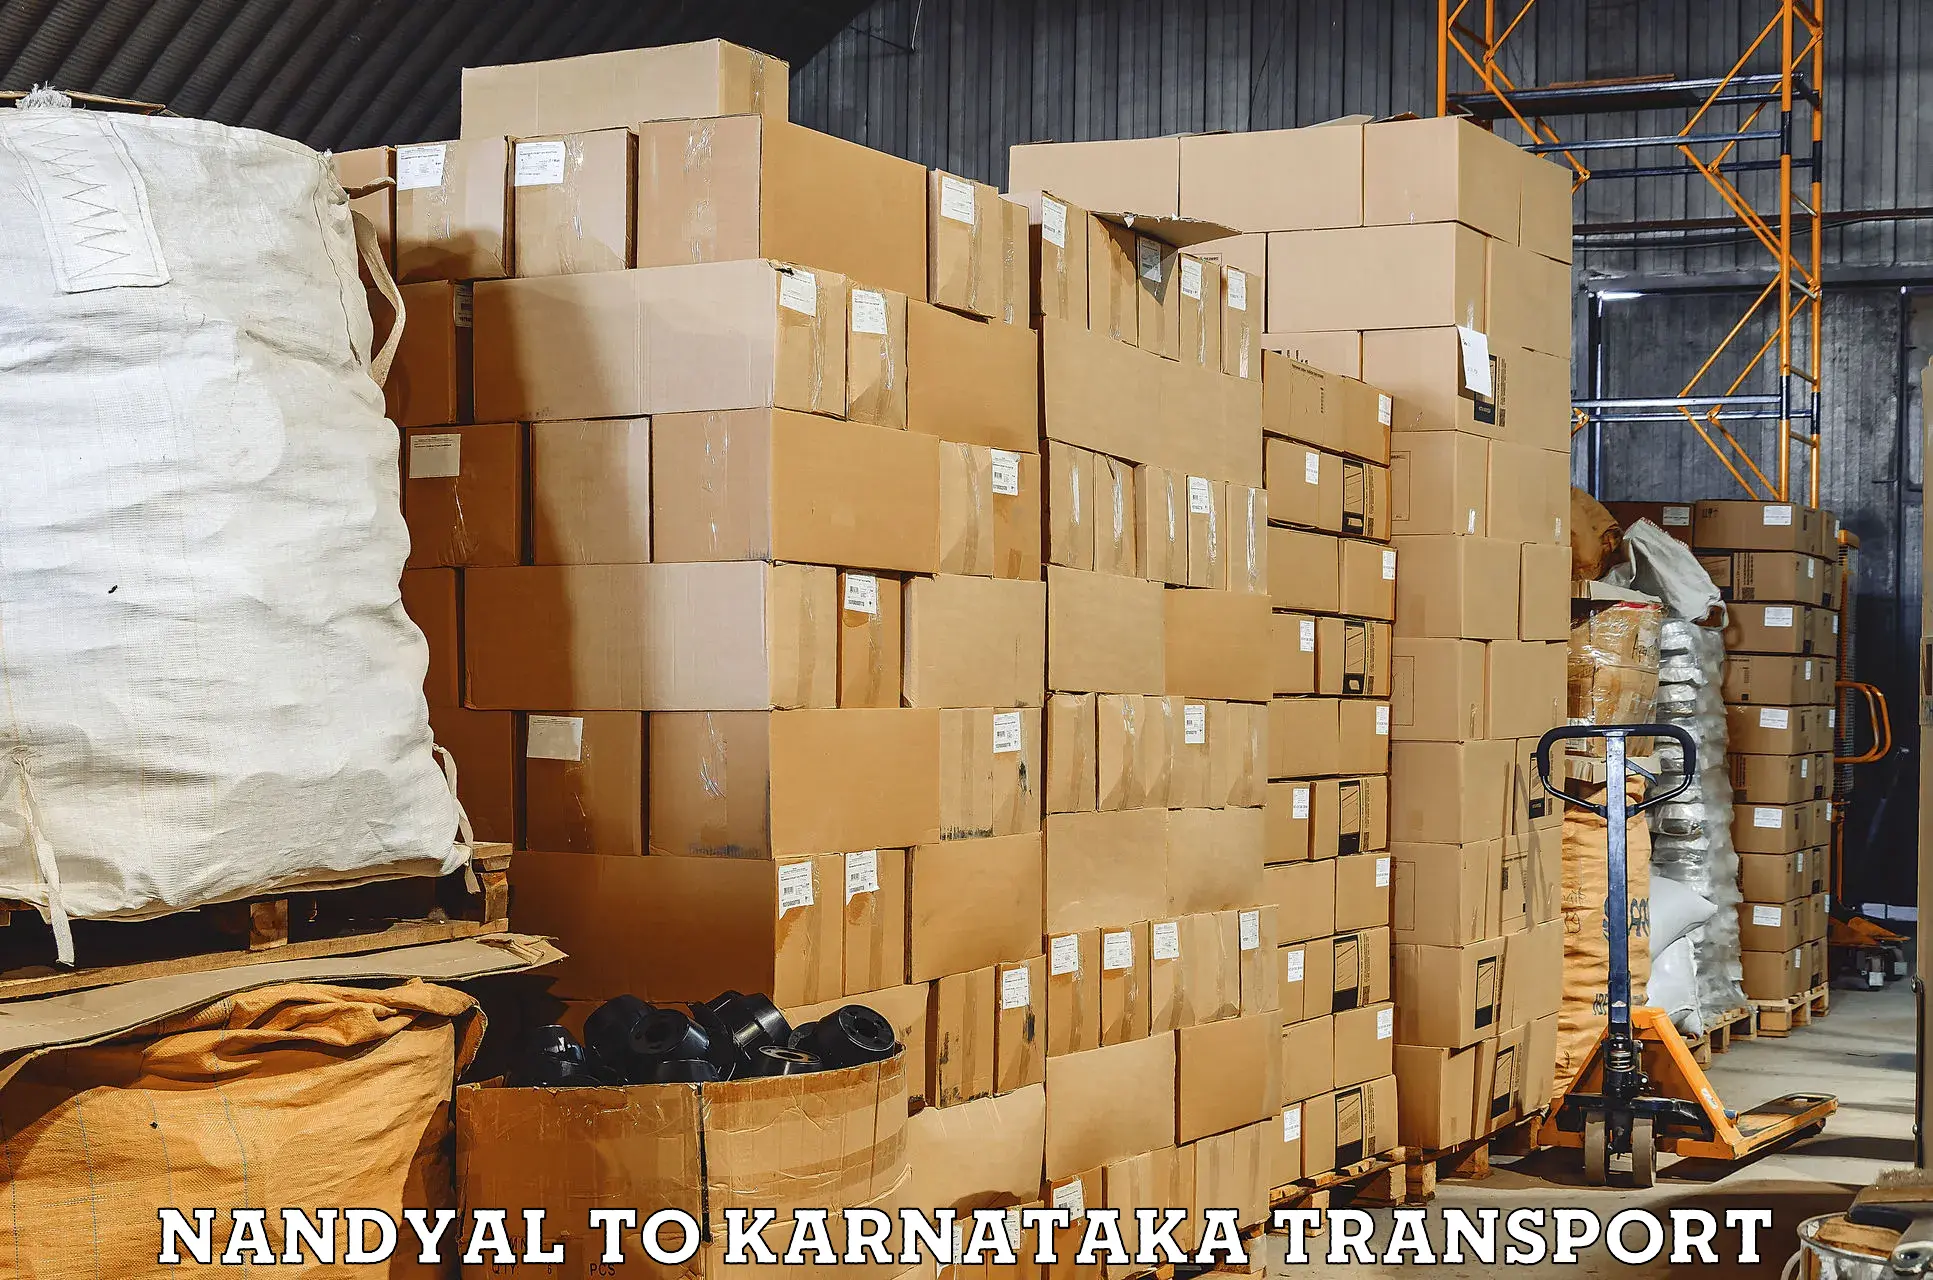 Nearest transport service Nandyal to Koratagere